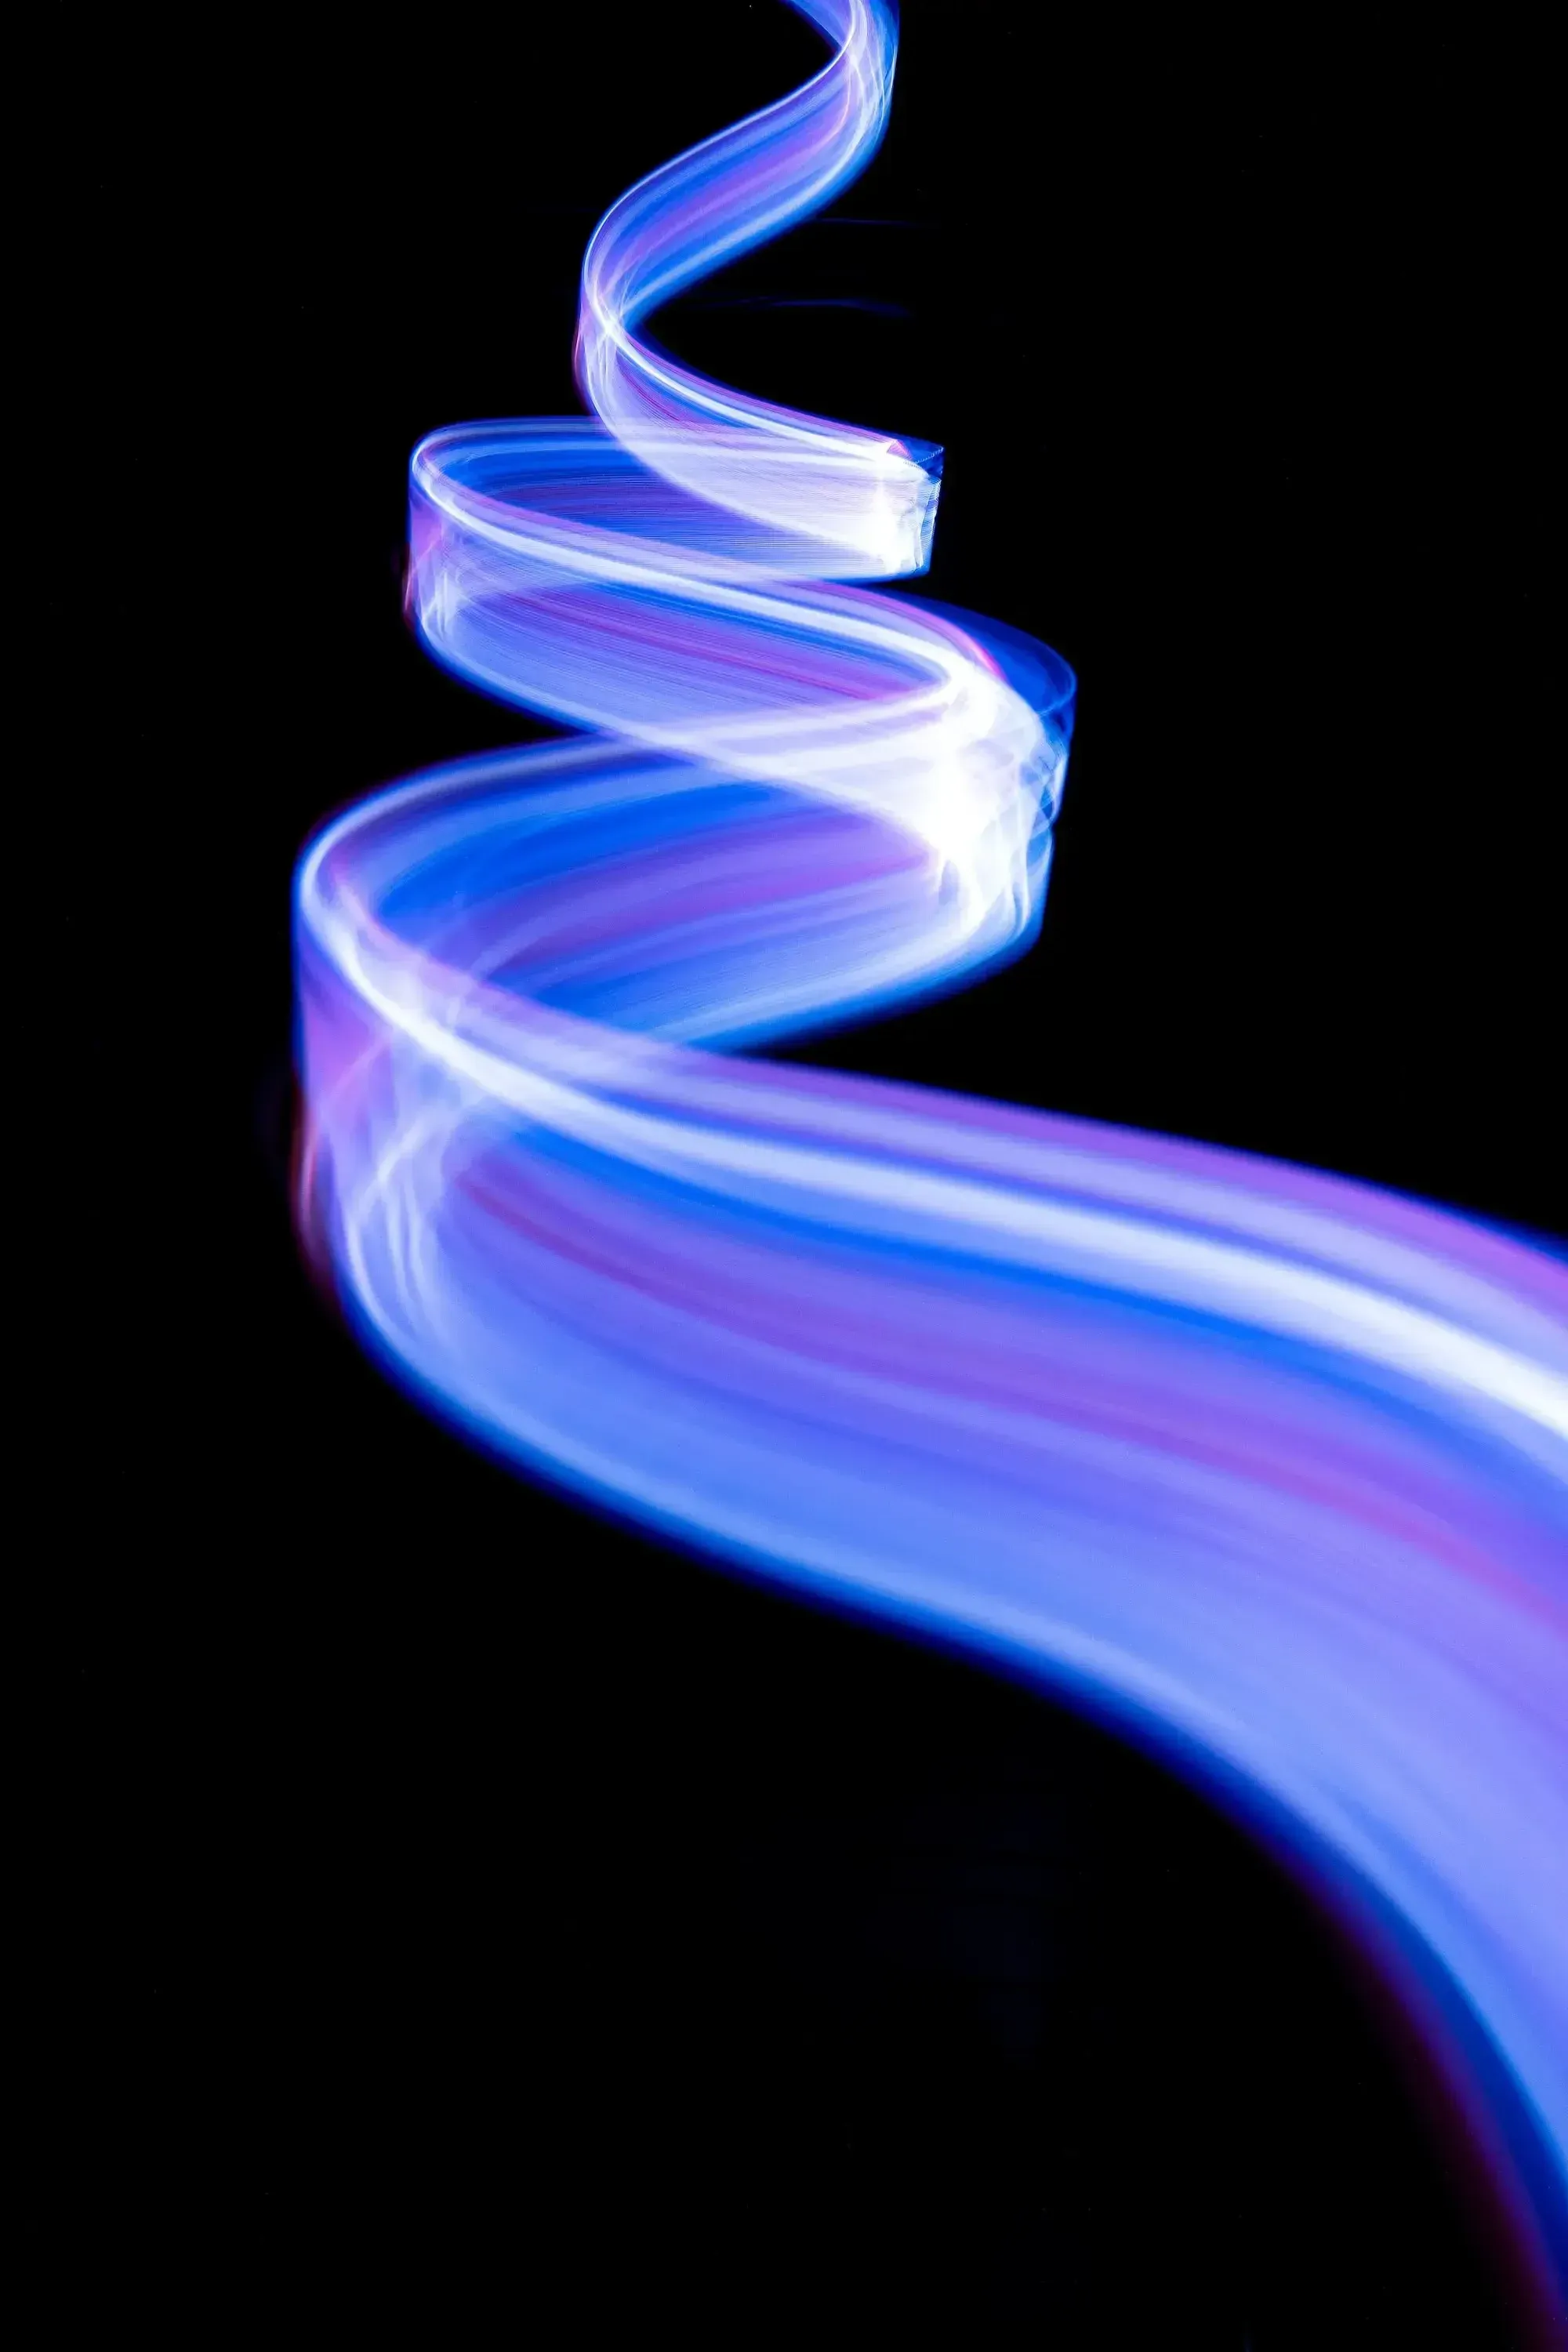 Blau-lila Lichtstreifen in einer Spirale auf schwarzem Hintergrund.